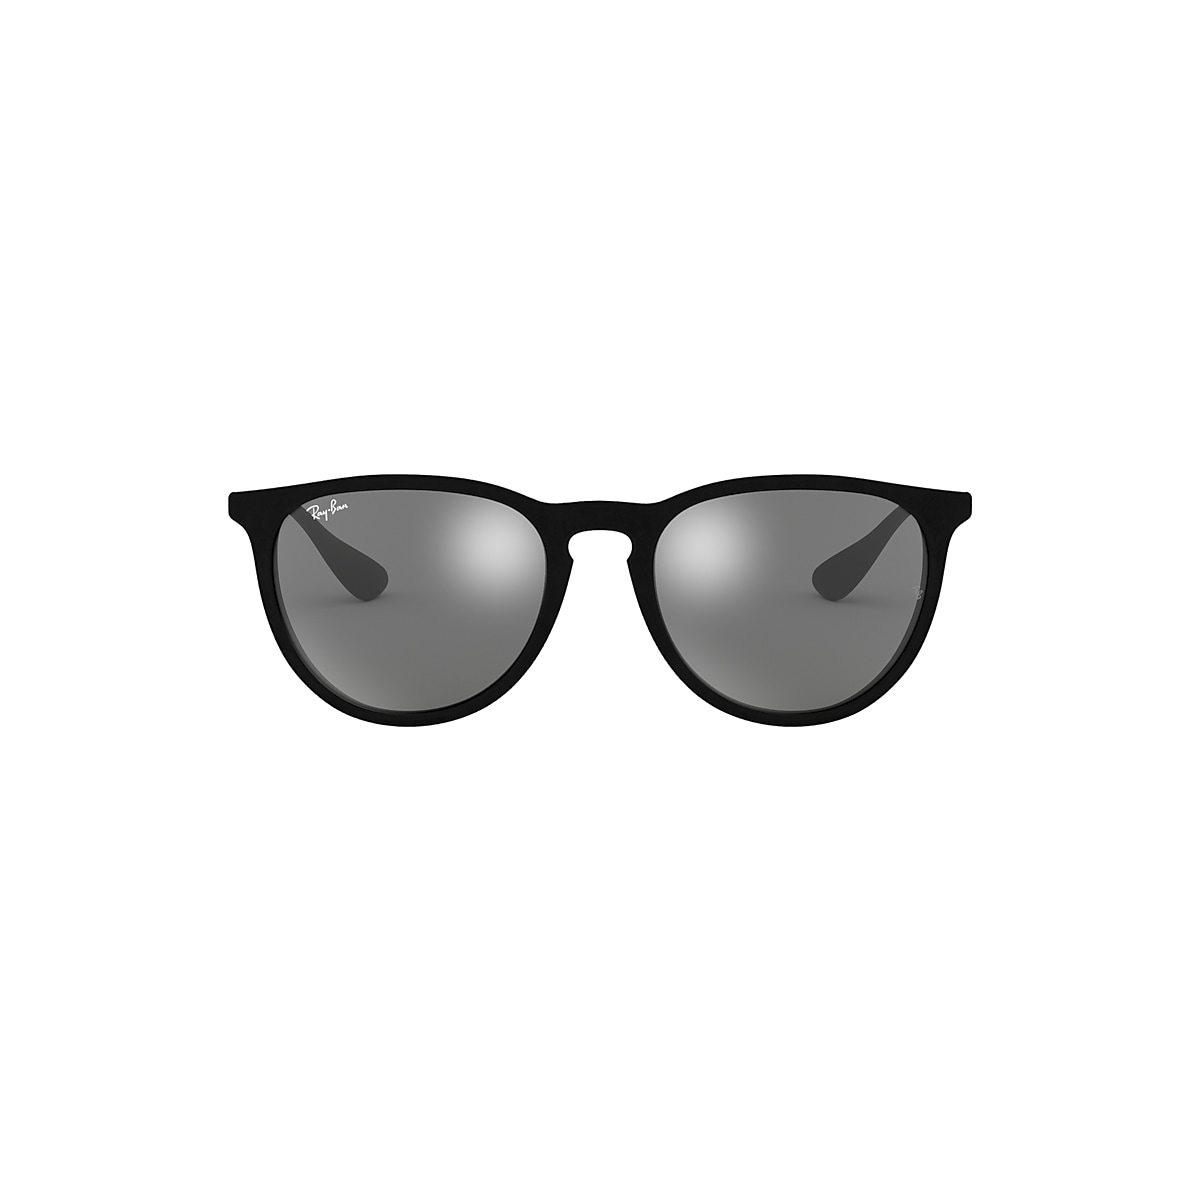 Erika Velvet Sunglasses in Black Velvet and Grey | Ray-Ban®